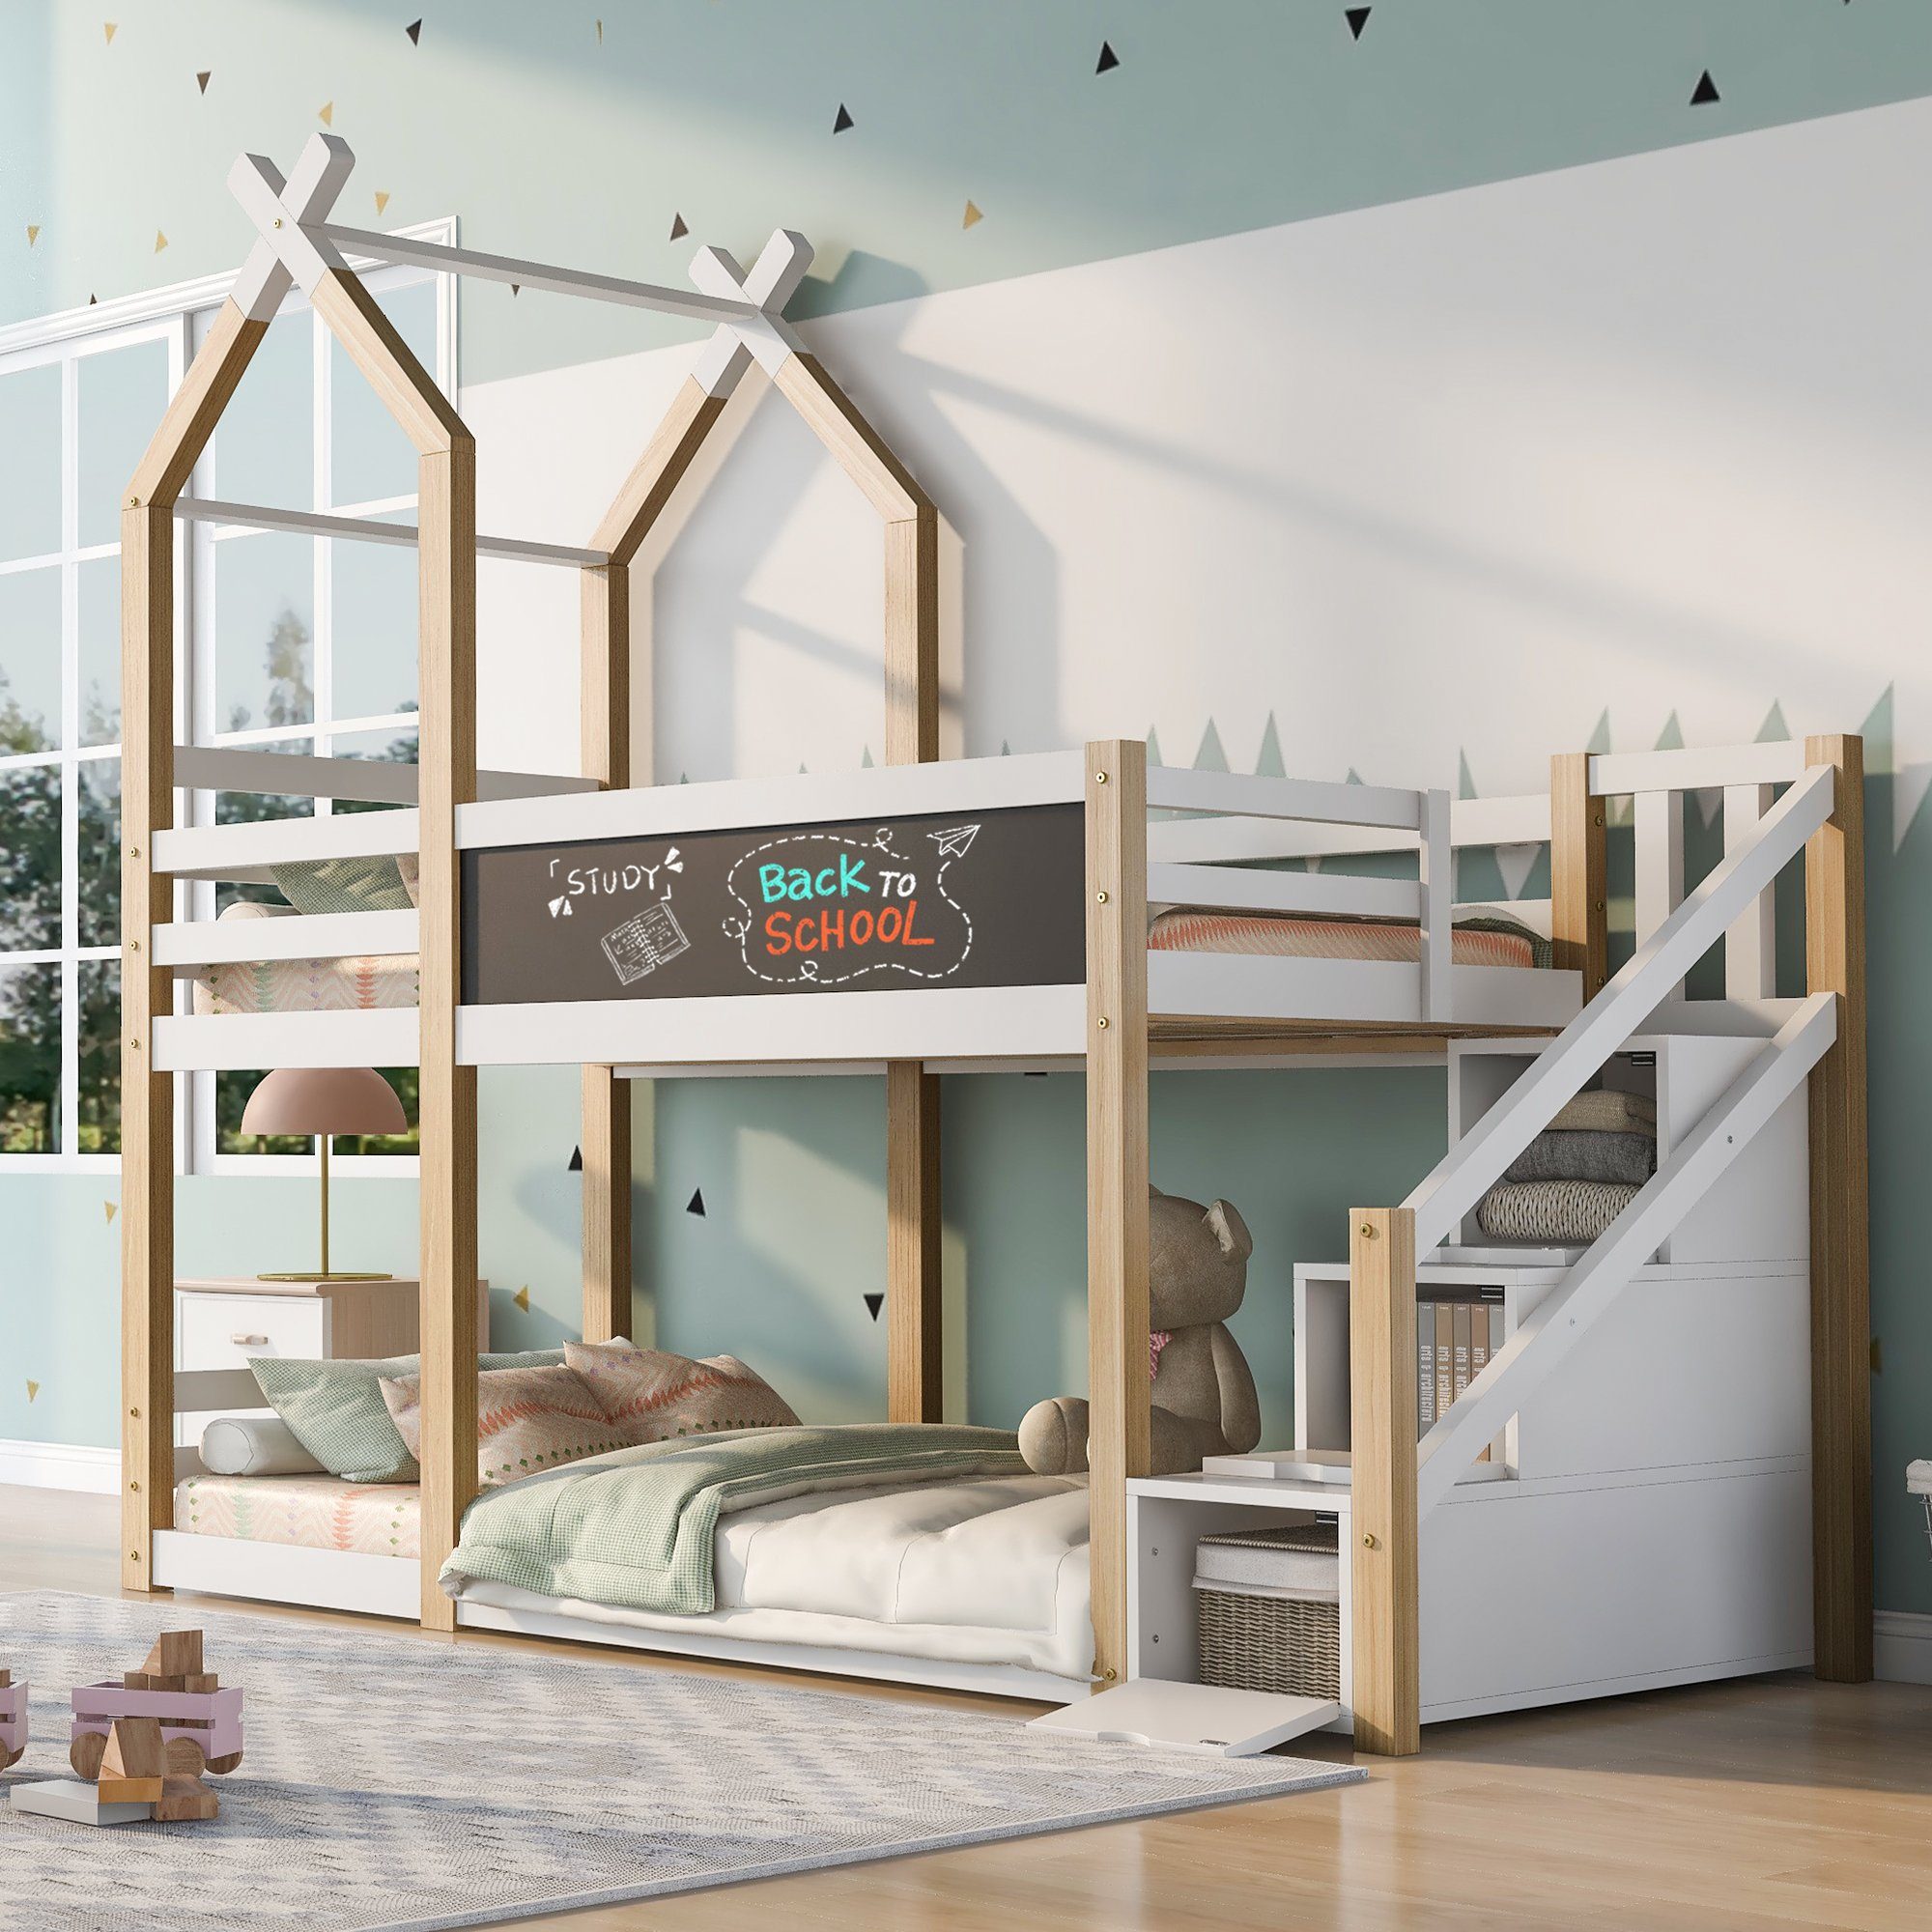 OKWISH Etagenbett Kinderbett (mit Speicherung und Rausfallschutz), Hochbett für Kinder– 2x Lattenrost- Natur & Weiß(ohne Matratze)